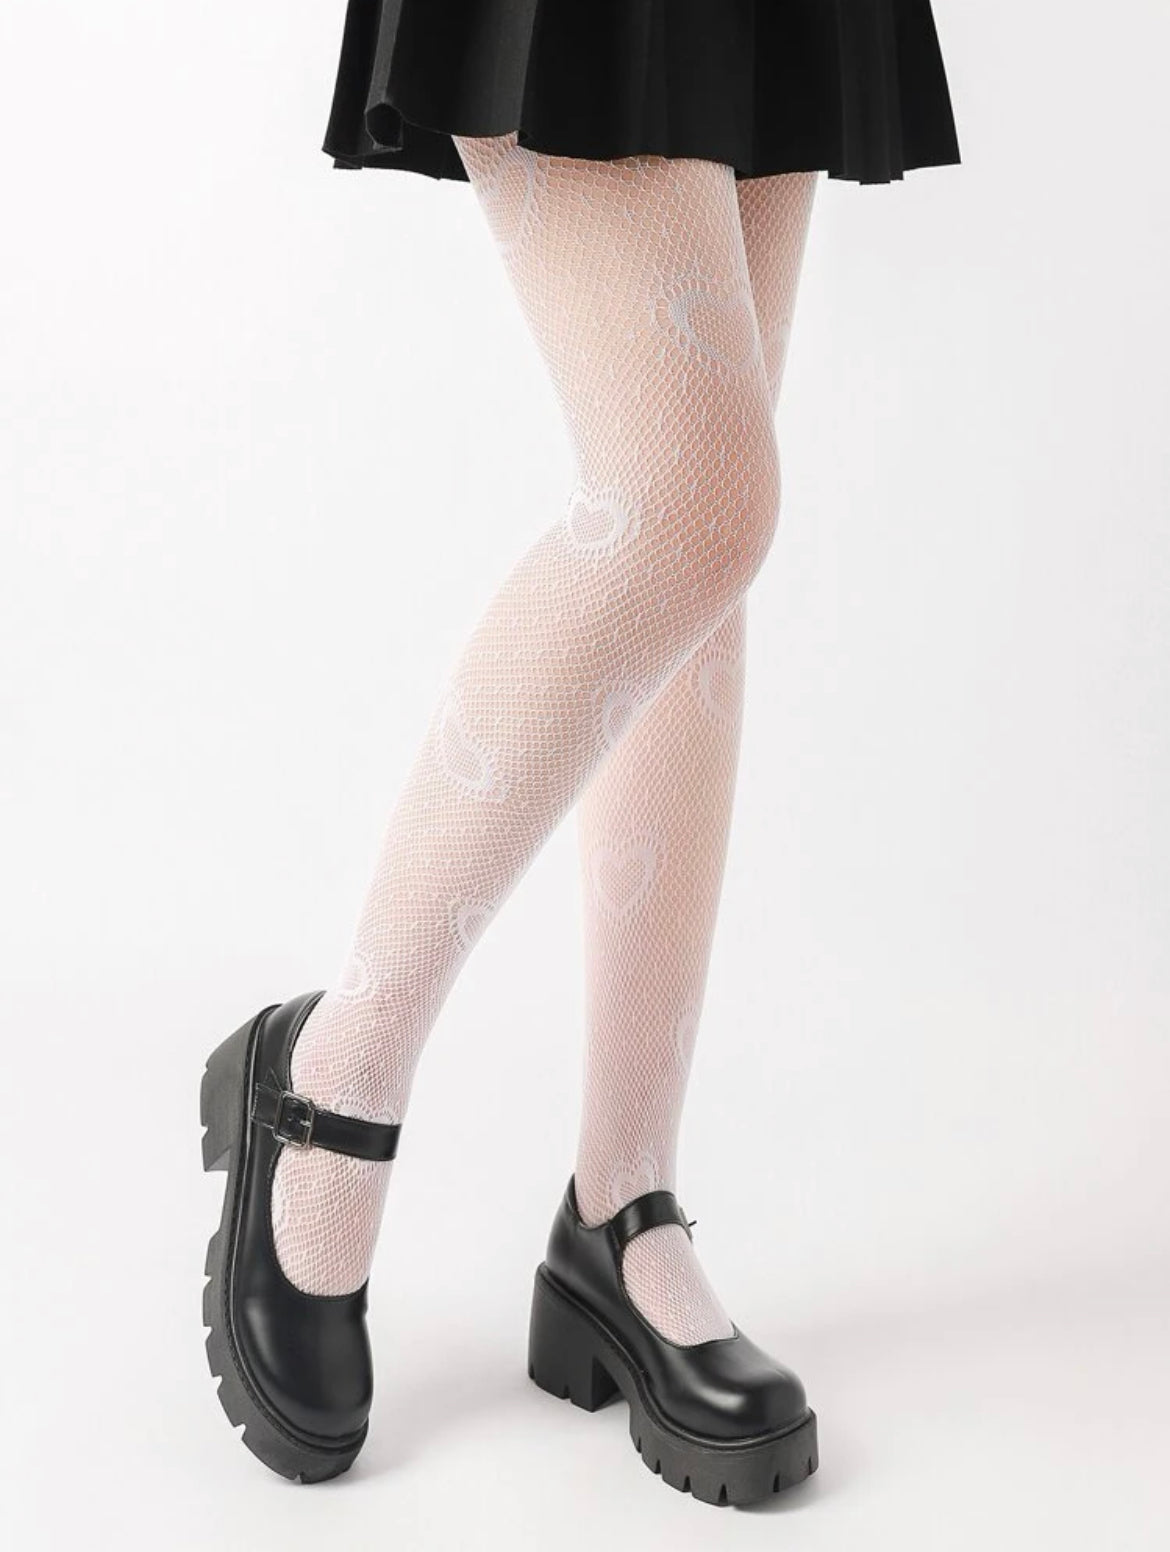 Fishnet heart stockings/heart leggings in black or white